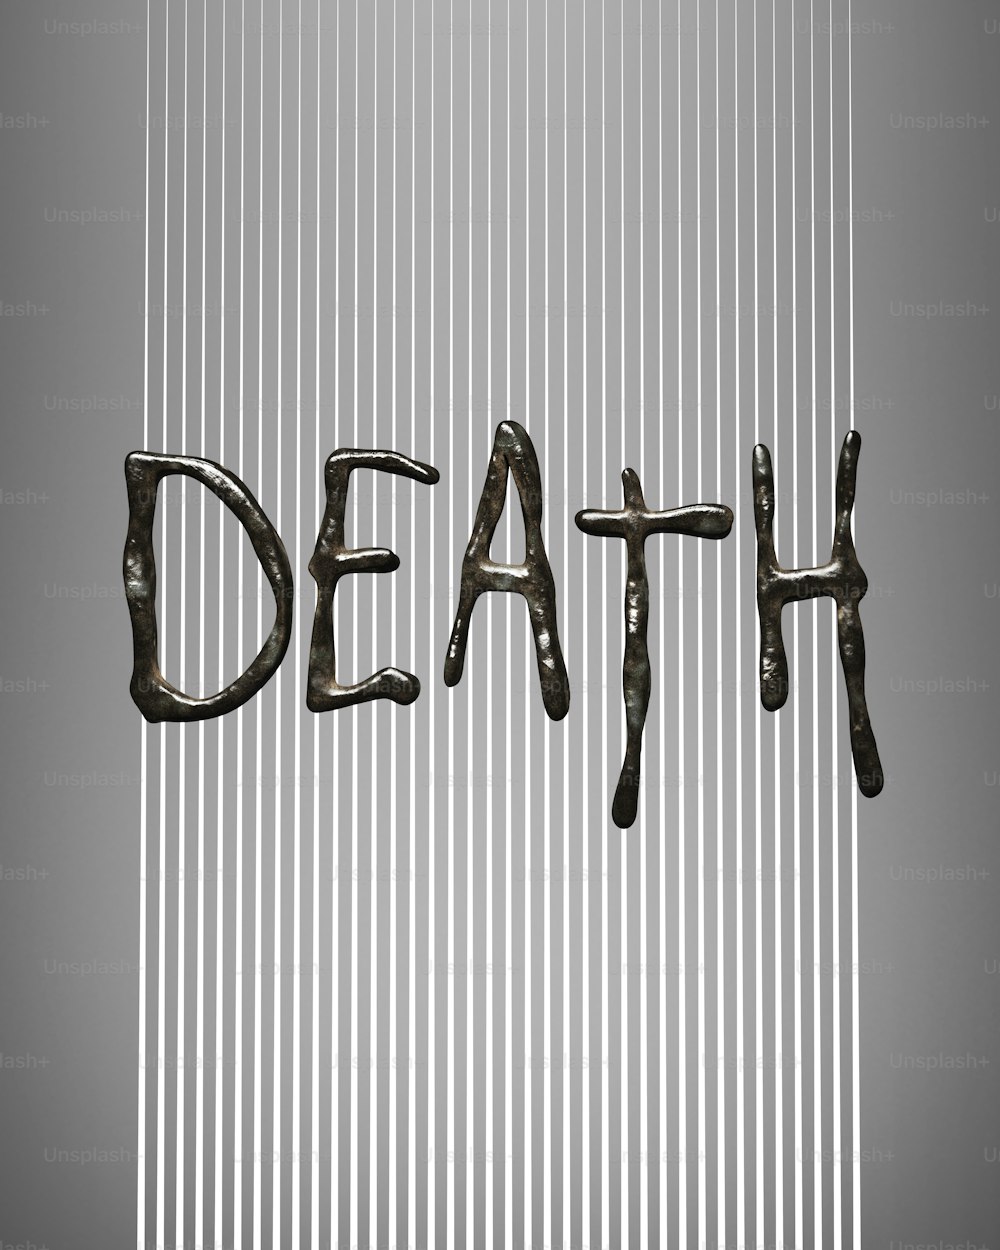 La parola morte è scritta in lettere metalliche